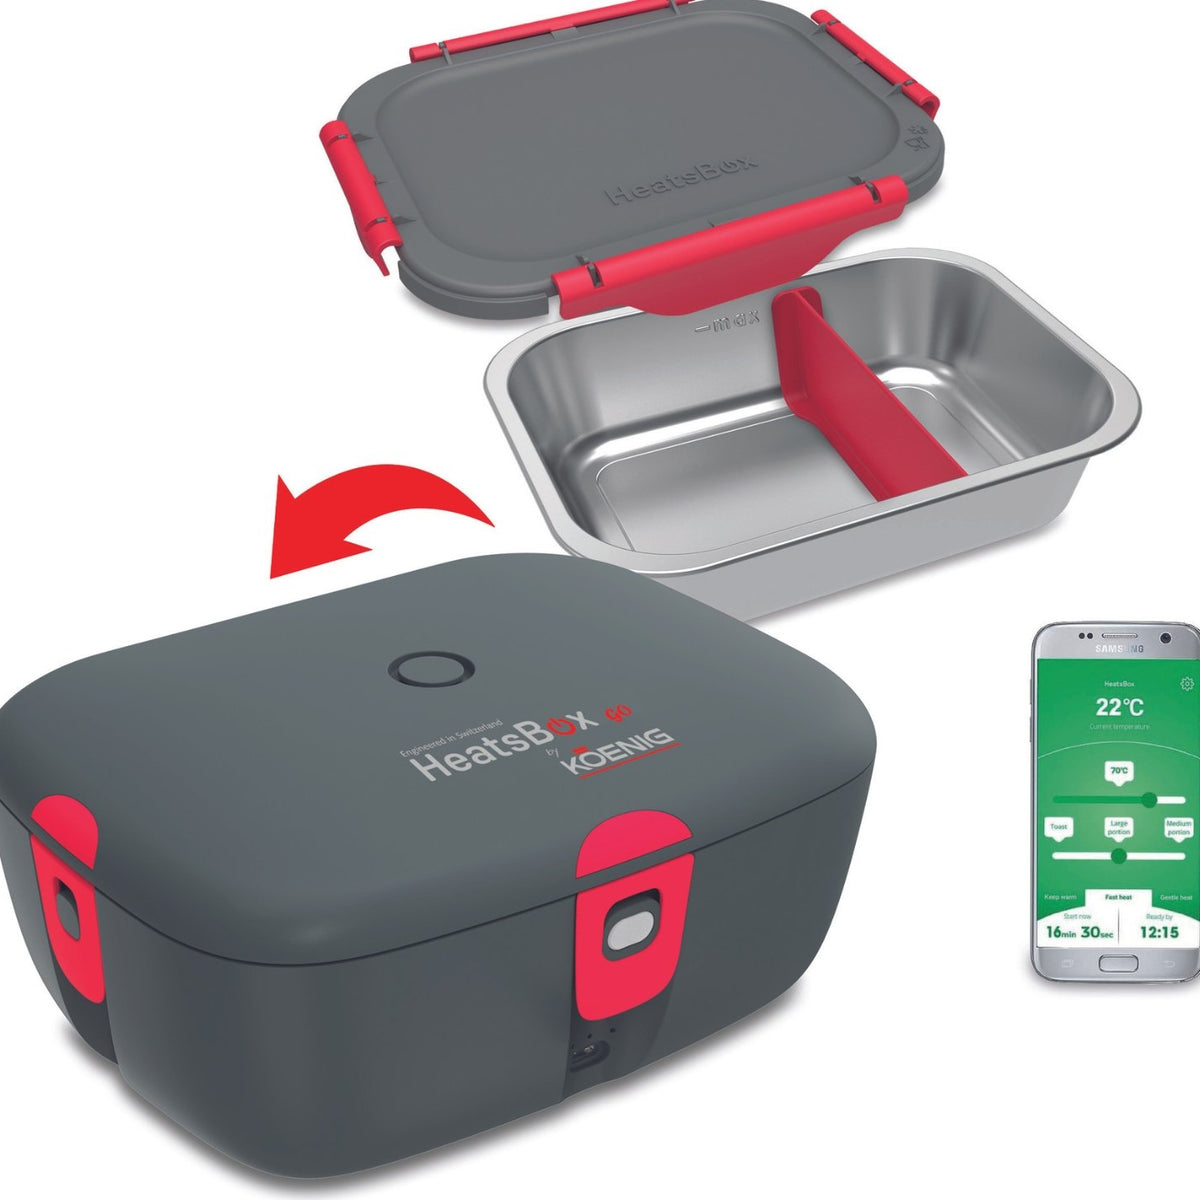 KOENIG HeatsBox Style, the heatable lunch box for on the go